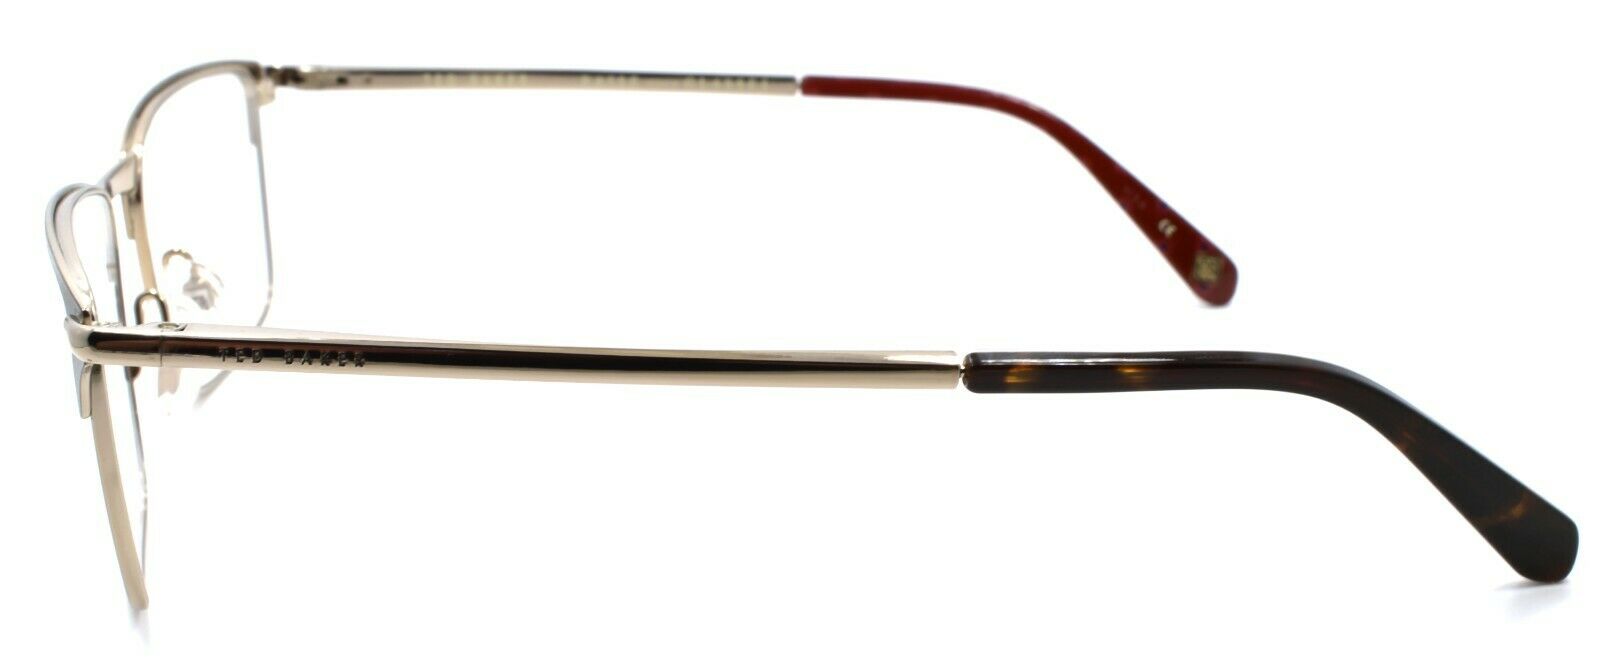 3-Ted Baker Amos 4241 104 Men's Eyeglasses Frames 53-17-145 Brown / Gold-4894327119134-IKSpecs